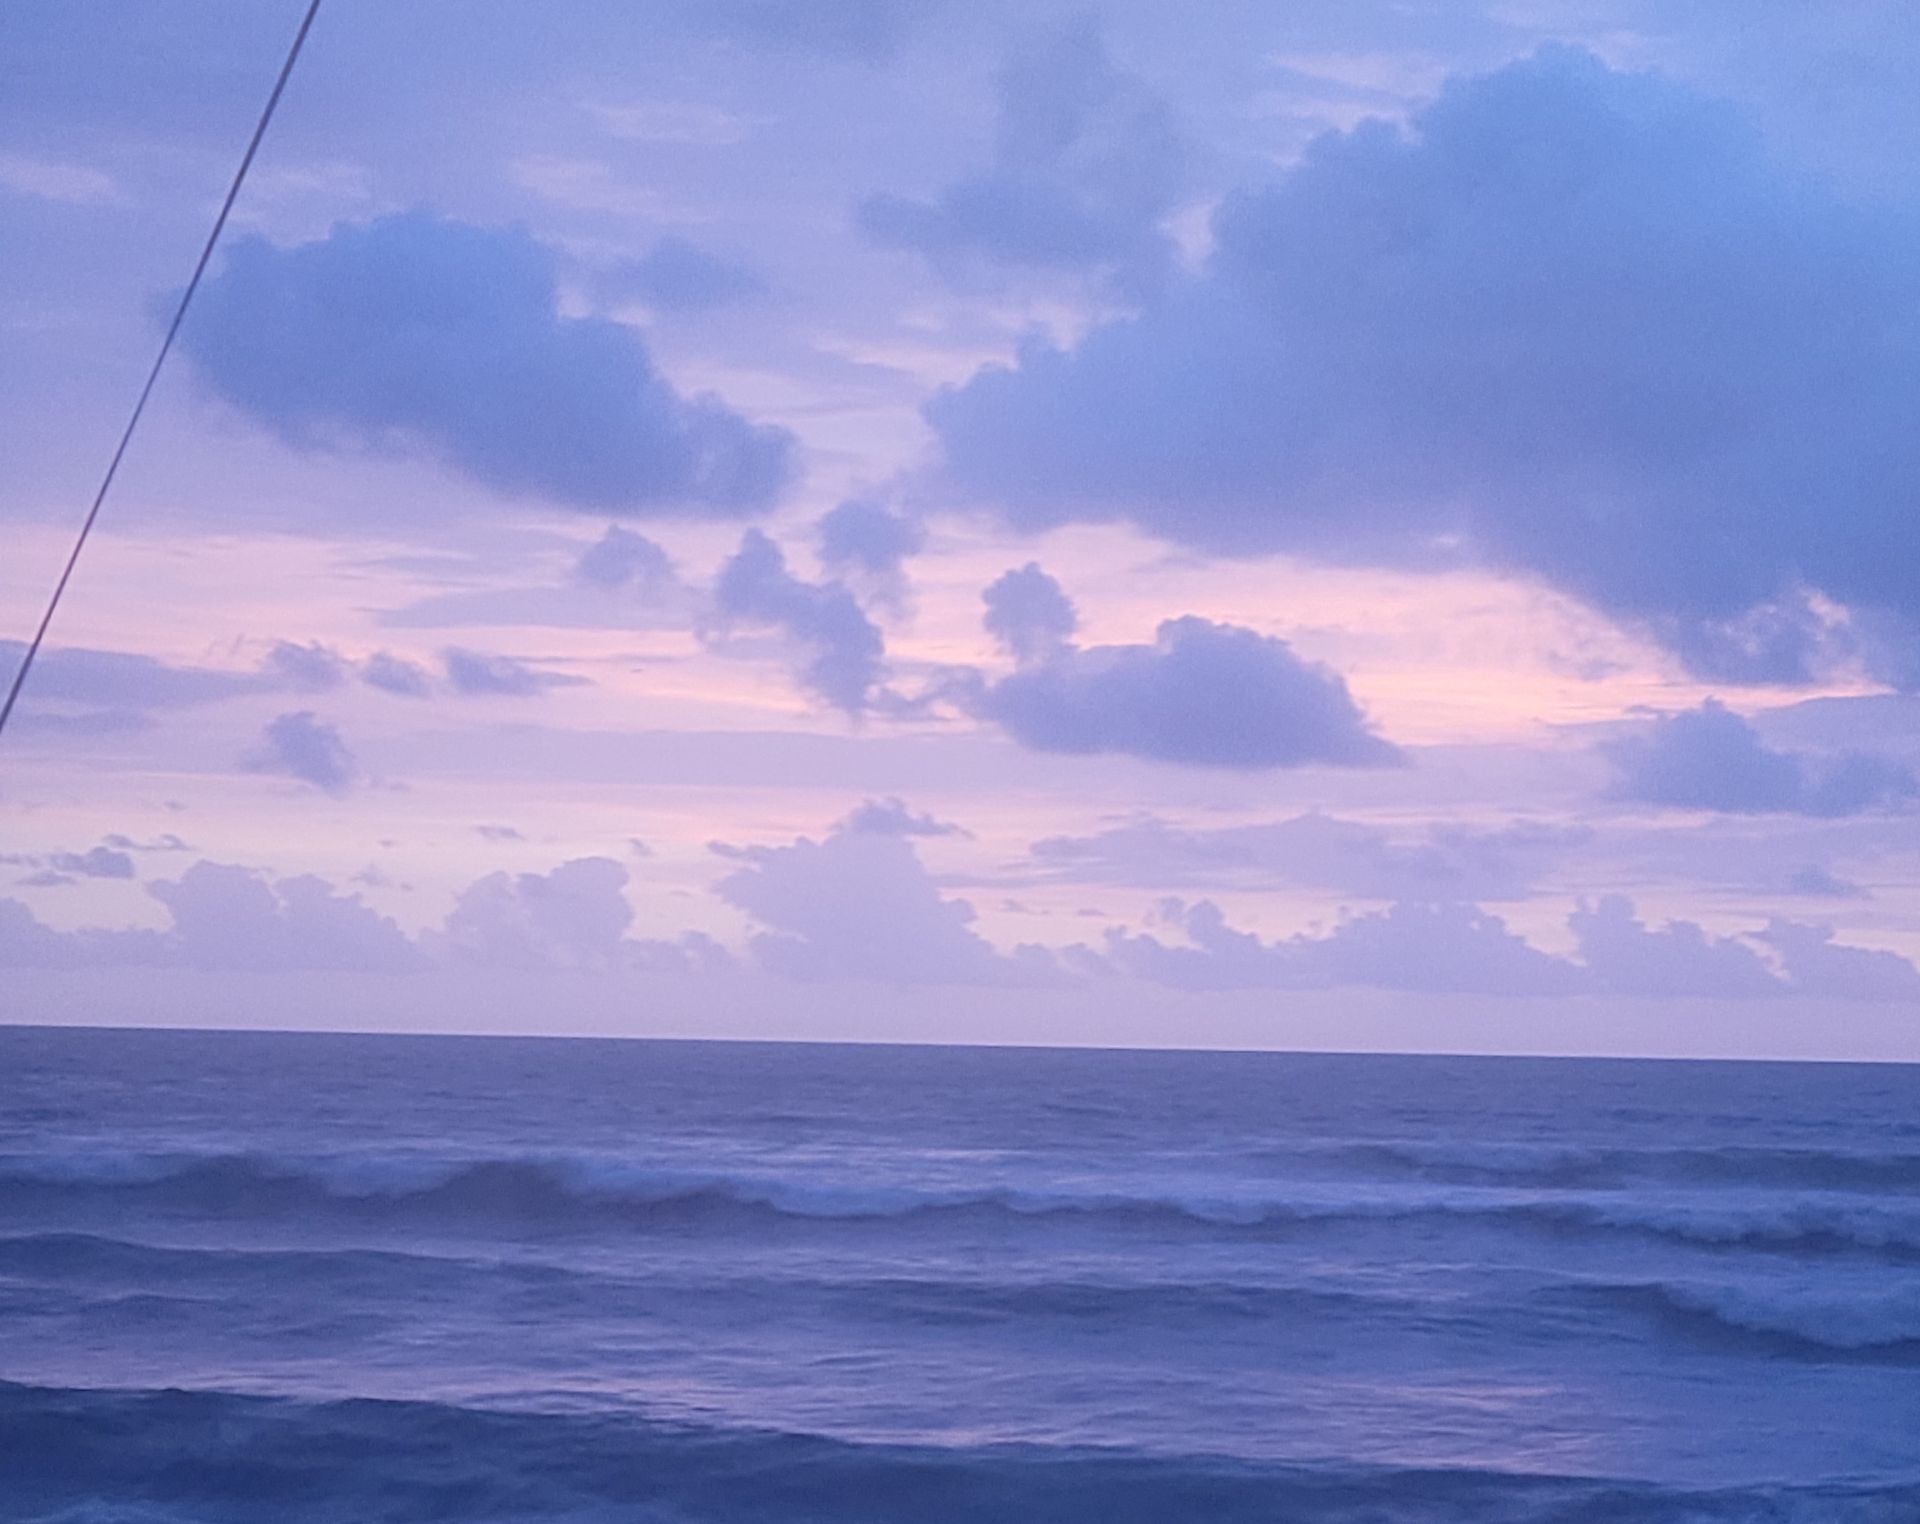 Bali Sunset - Purple